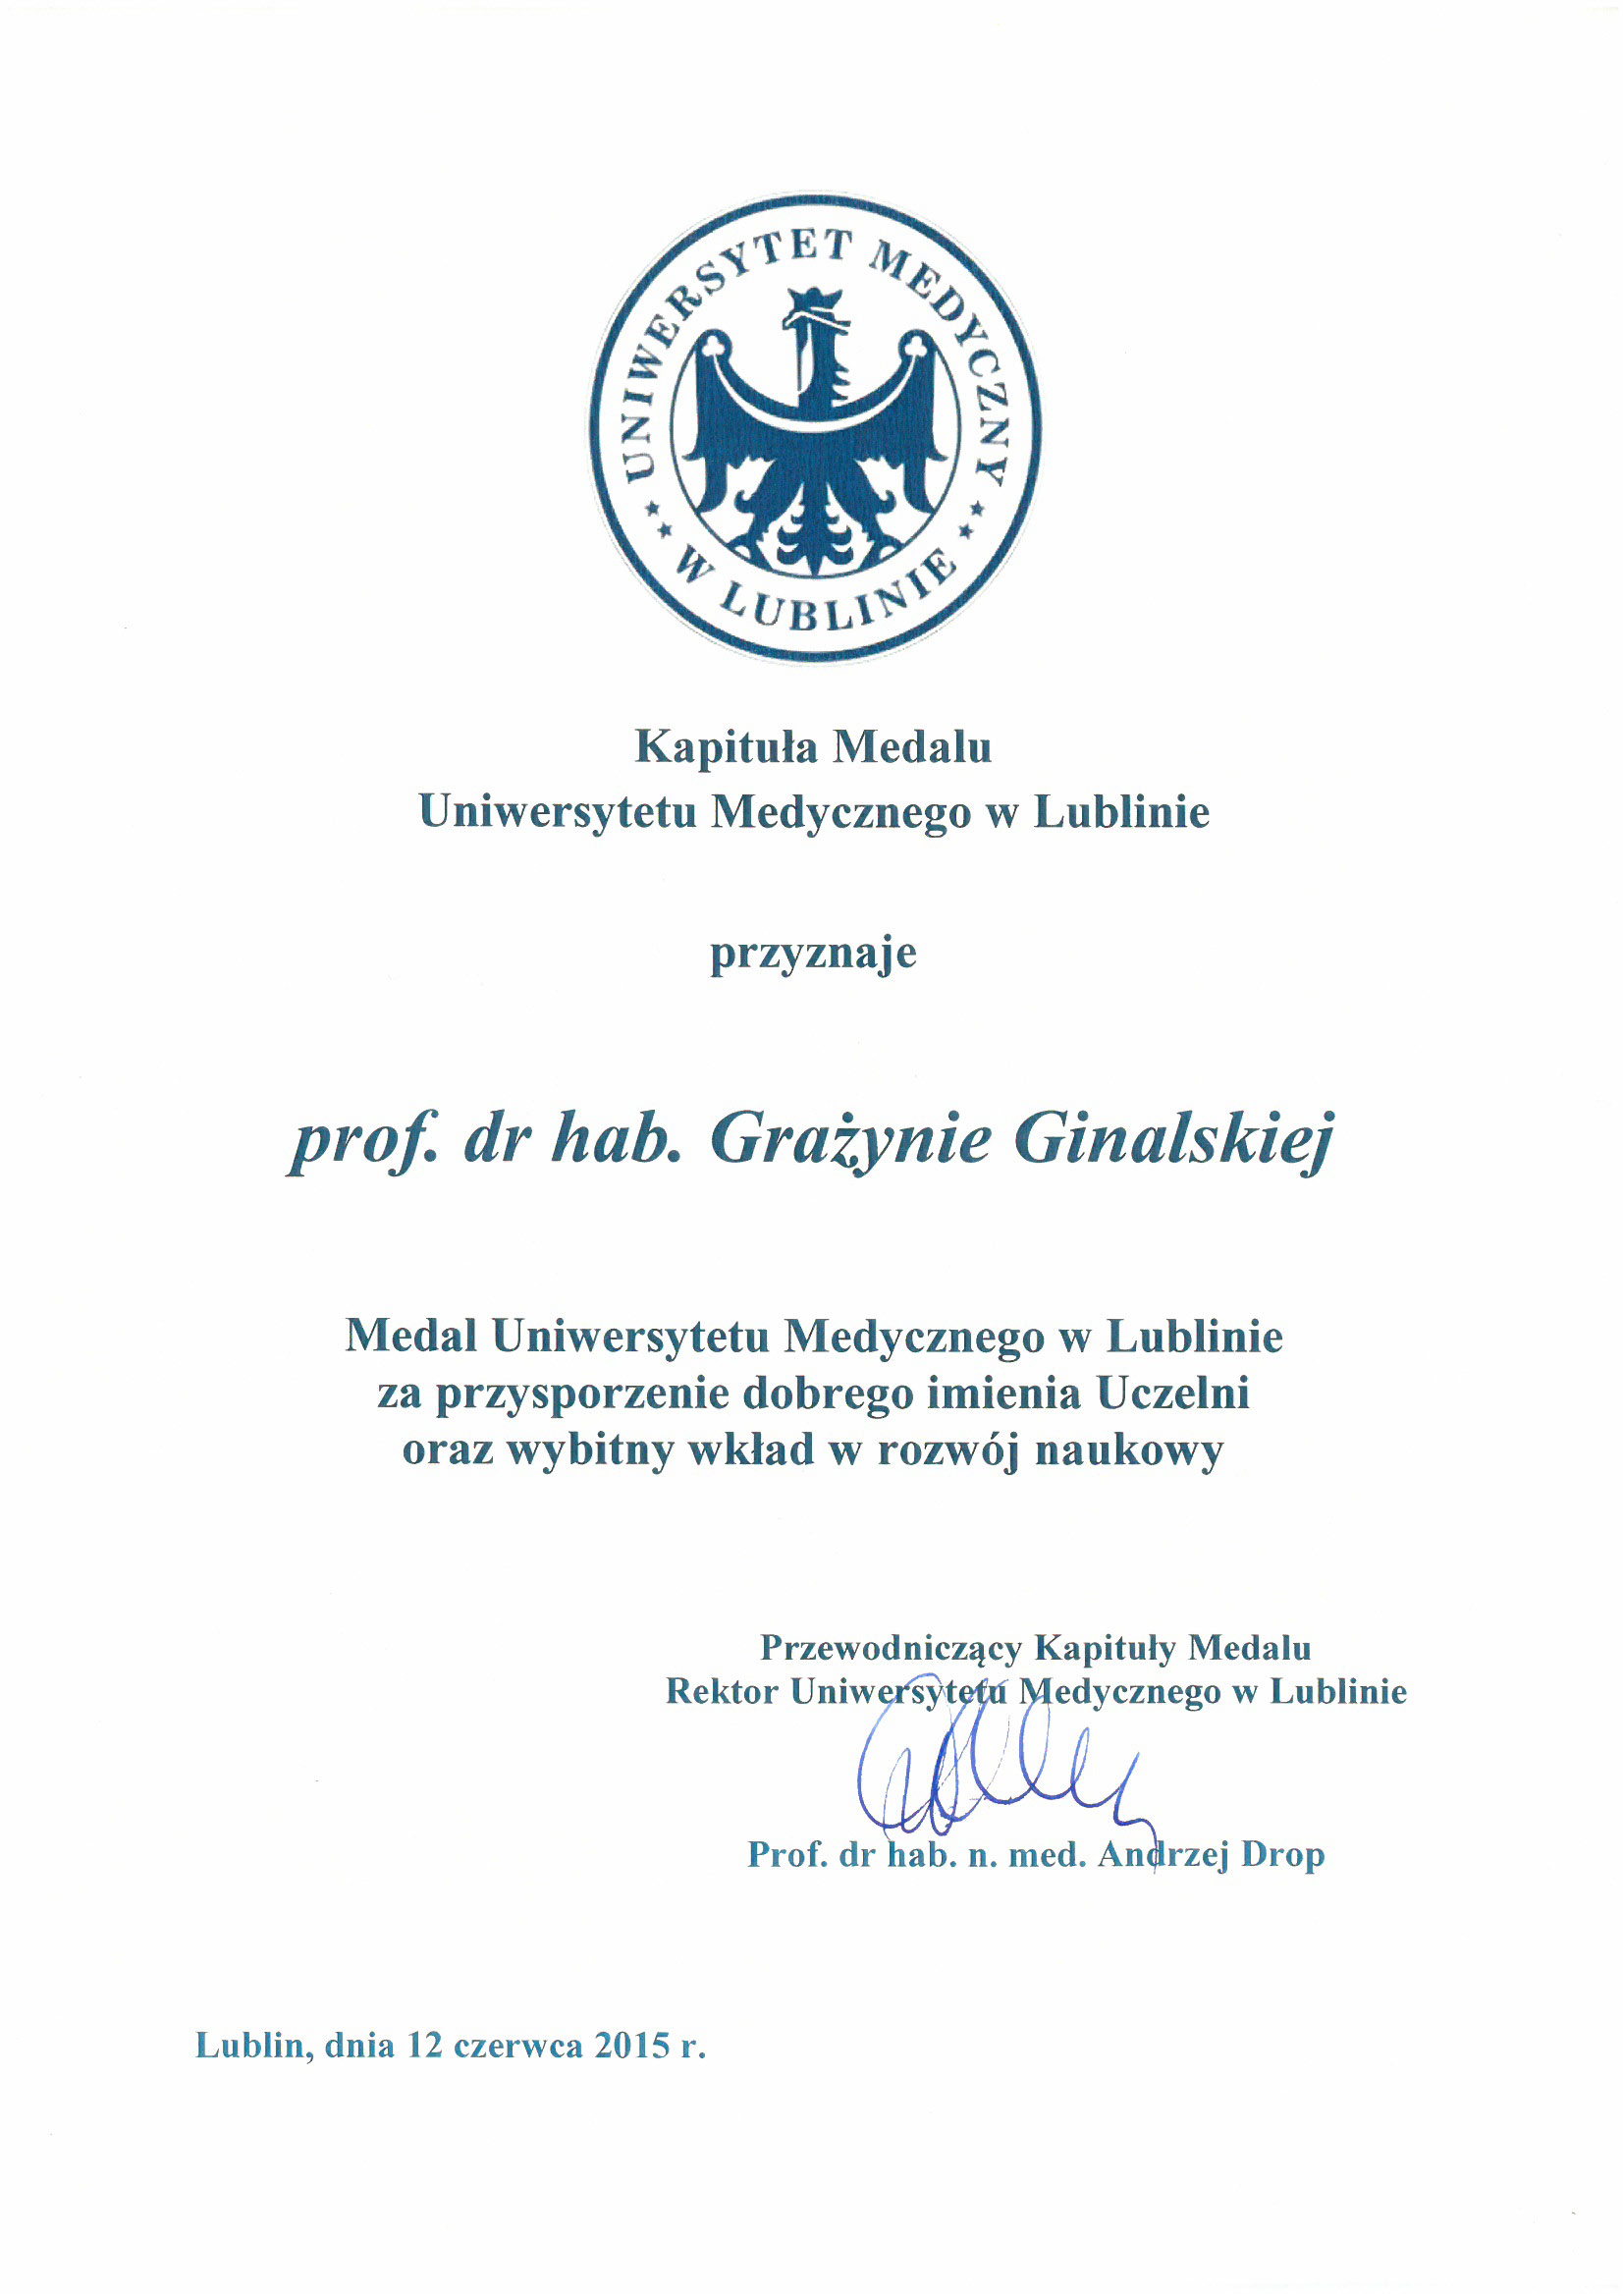 Medal Uniwersytetu Medycznego w Lublinie dla profesor Grażyny Ginalskiej za przysporzenie dobrego imienia Uczelni oraz wybitny wkłąd w rozwój naukowy